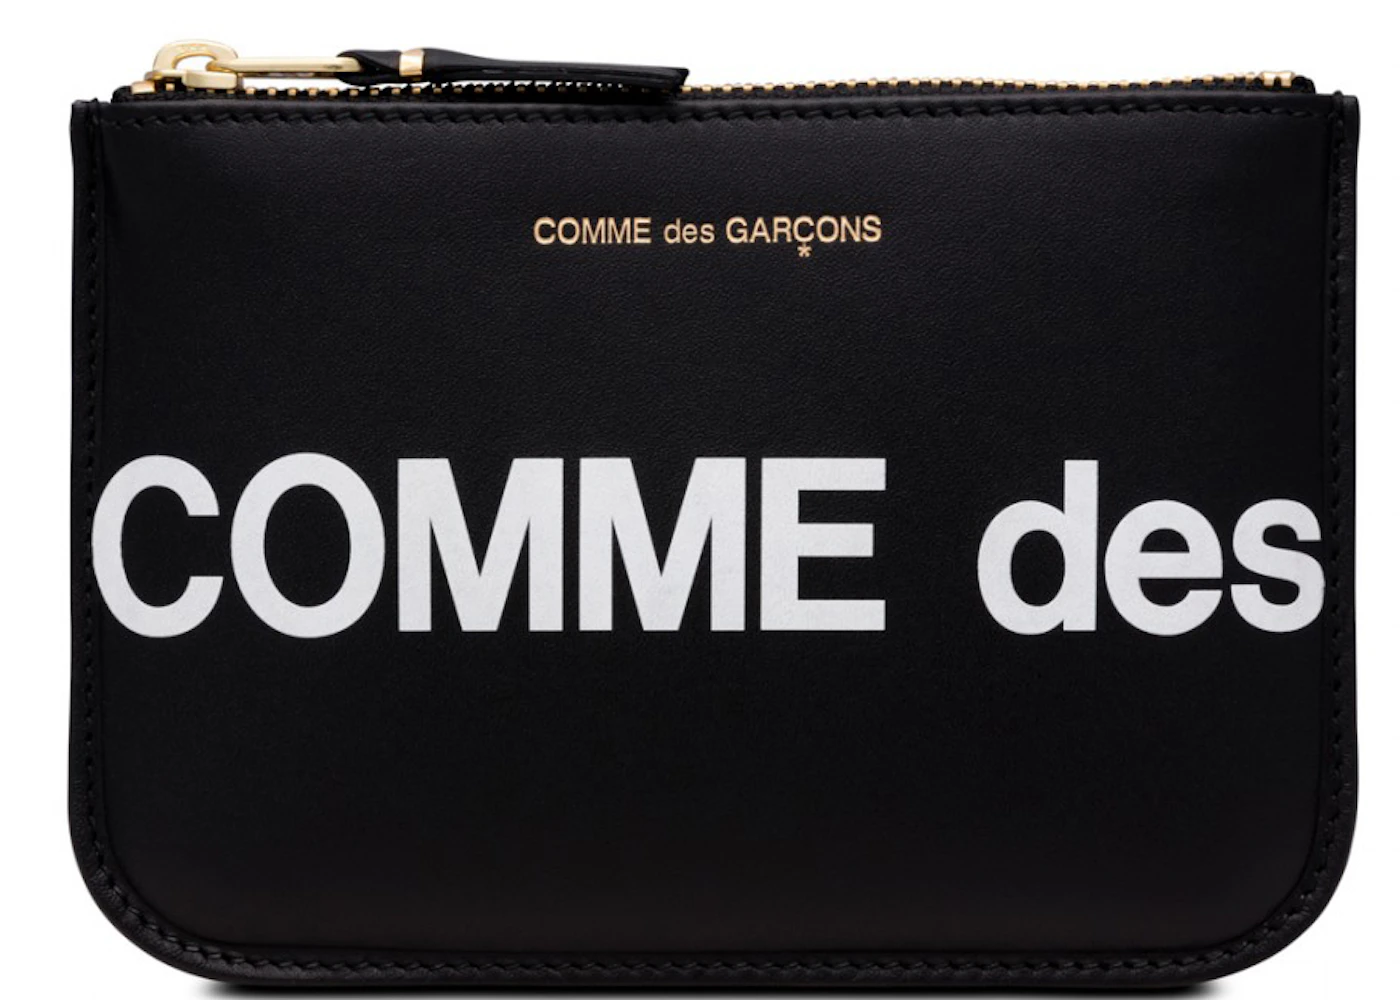 Comme des Garcons SA8100HL Huge Logo Wallet Black in Leather with Gold ...